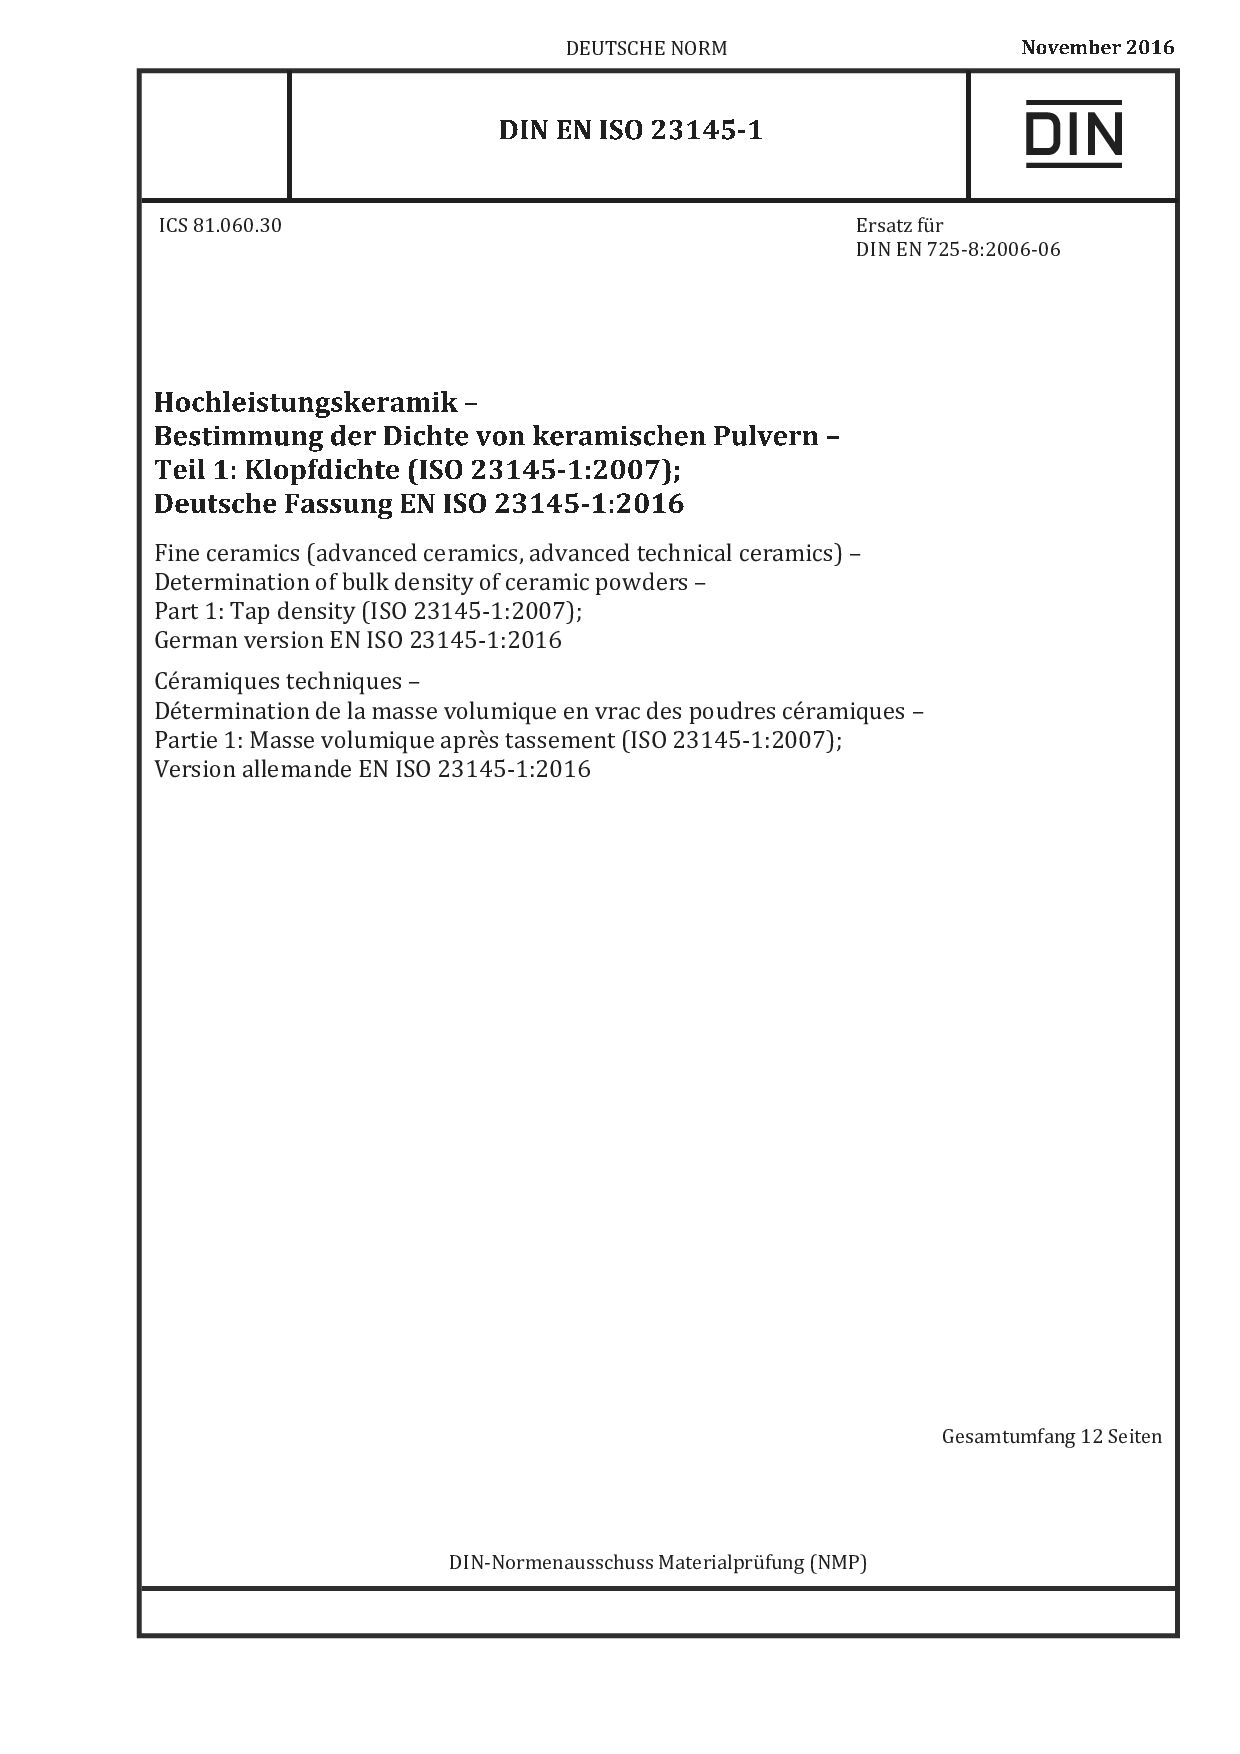 DIN EN ISO 23145-1:2016封面图